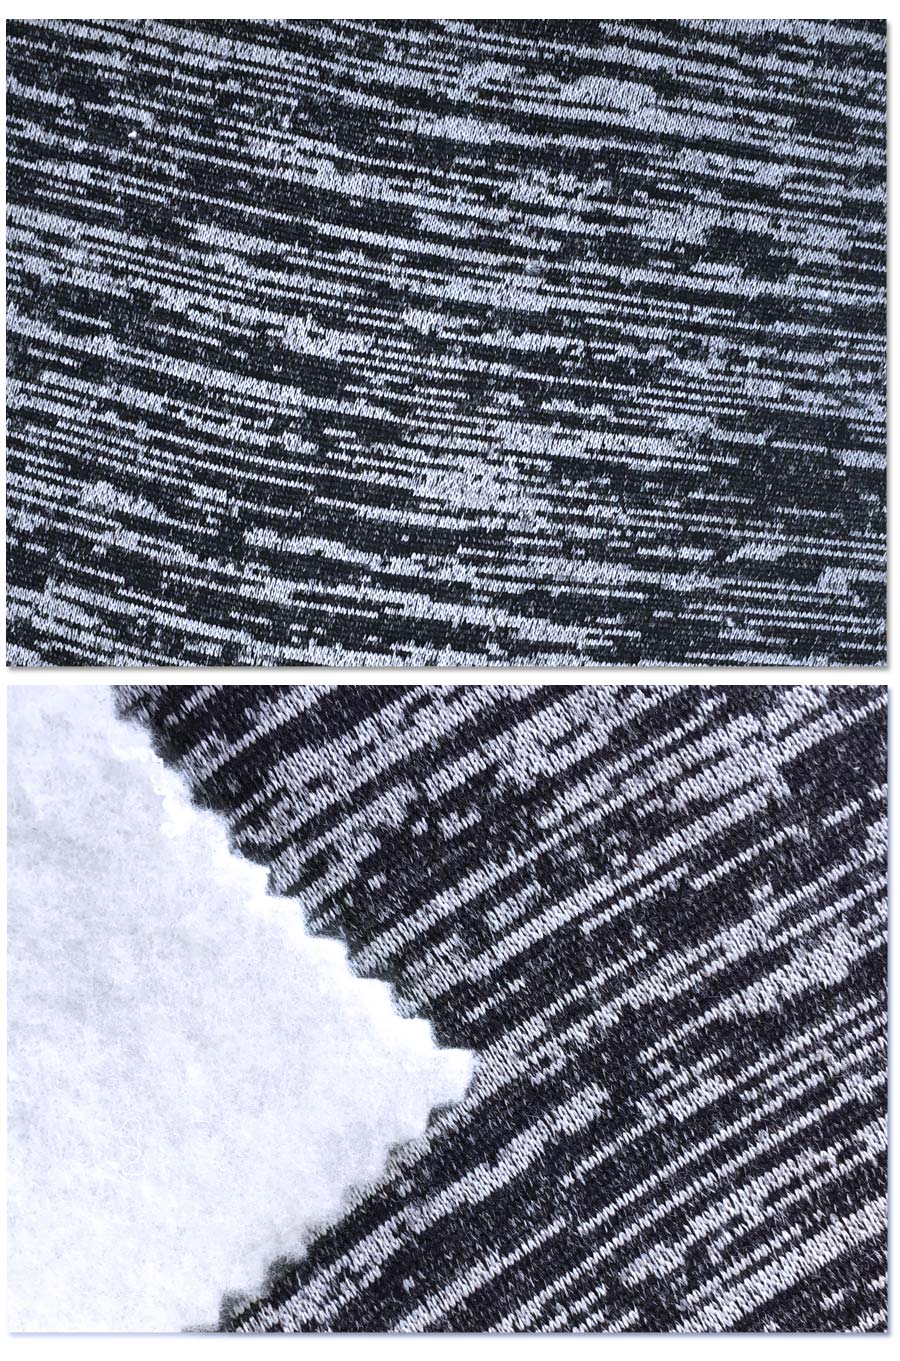 1.8M 280G одна сторона почистила ткань ватки цвета этапа картины нашивки зебры